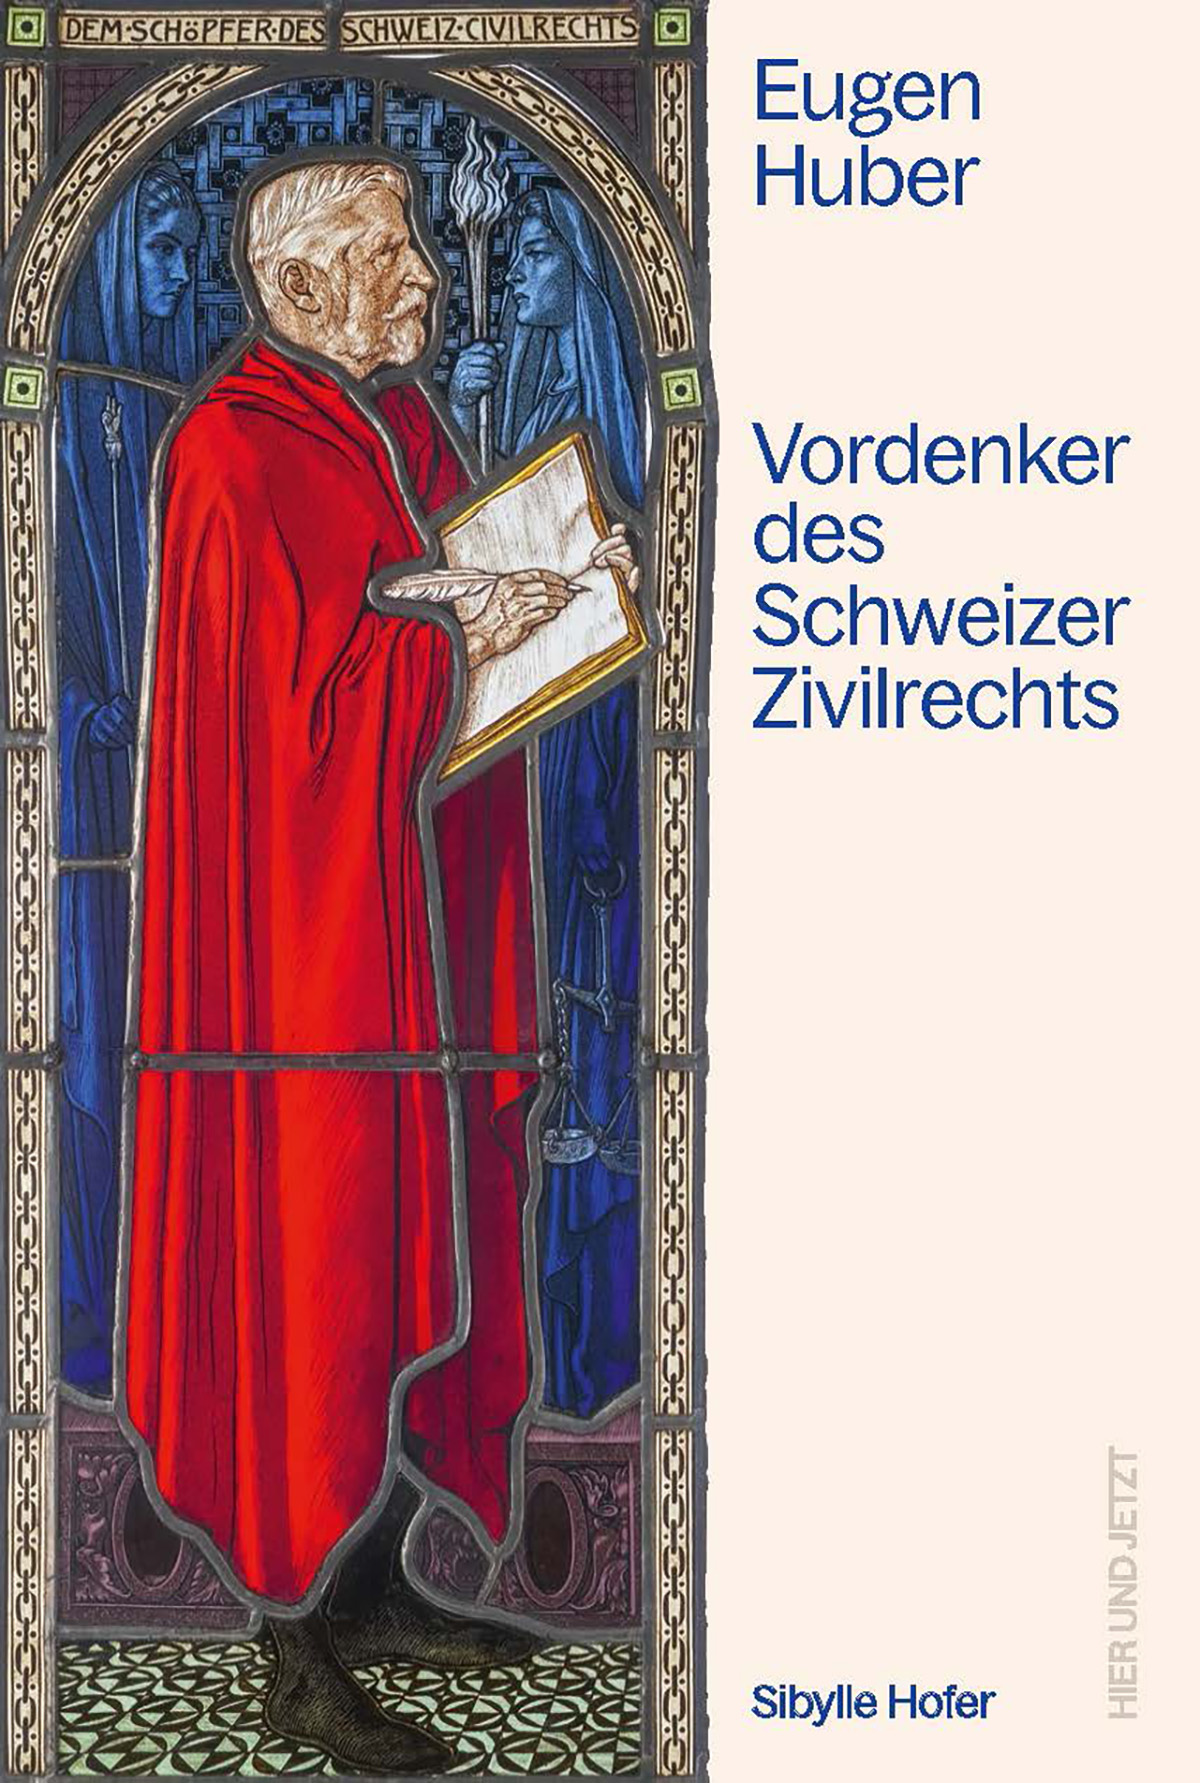 Buchcover von «Eugen Huber. Vordenker des Schweizer Zivilrechts». © Hier und Jetzt Verlag